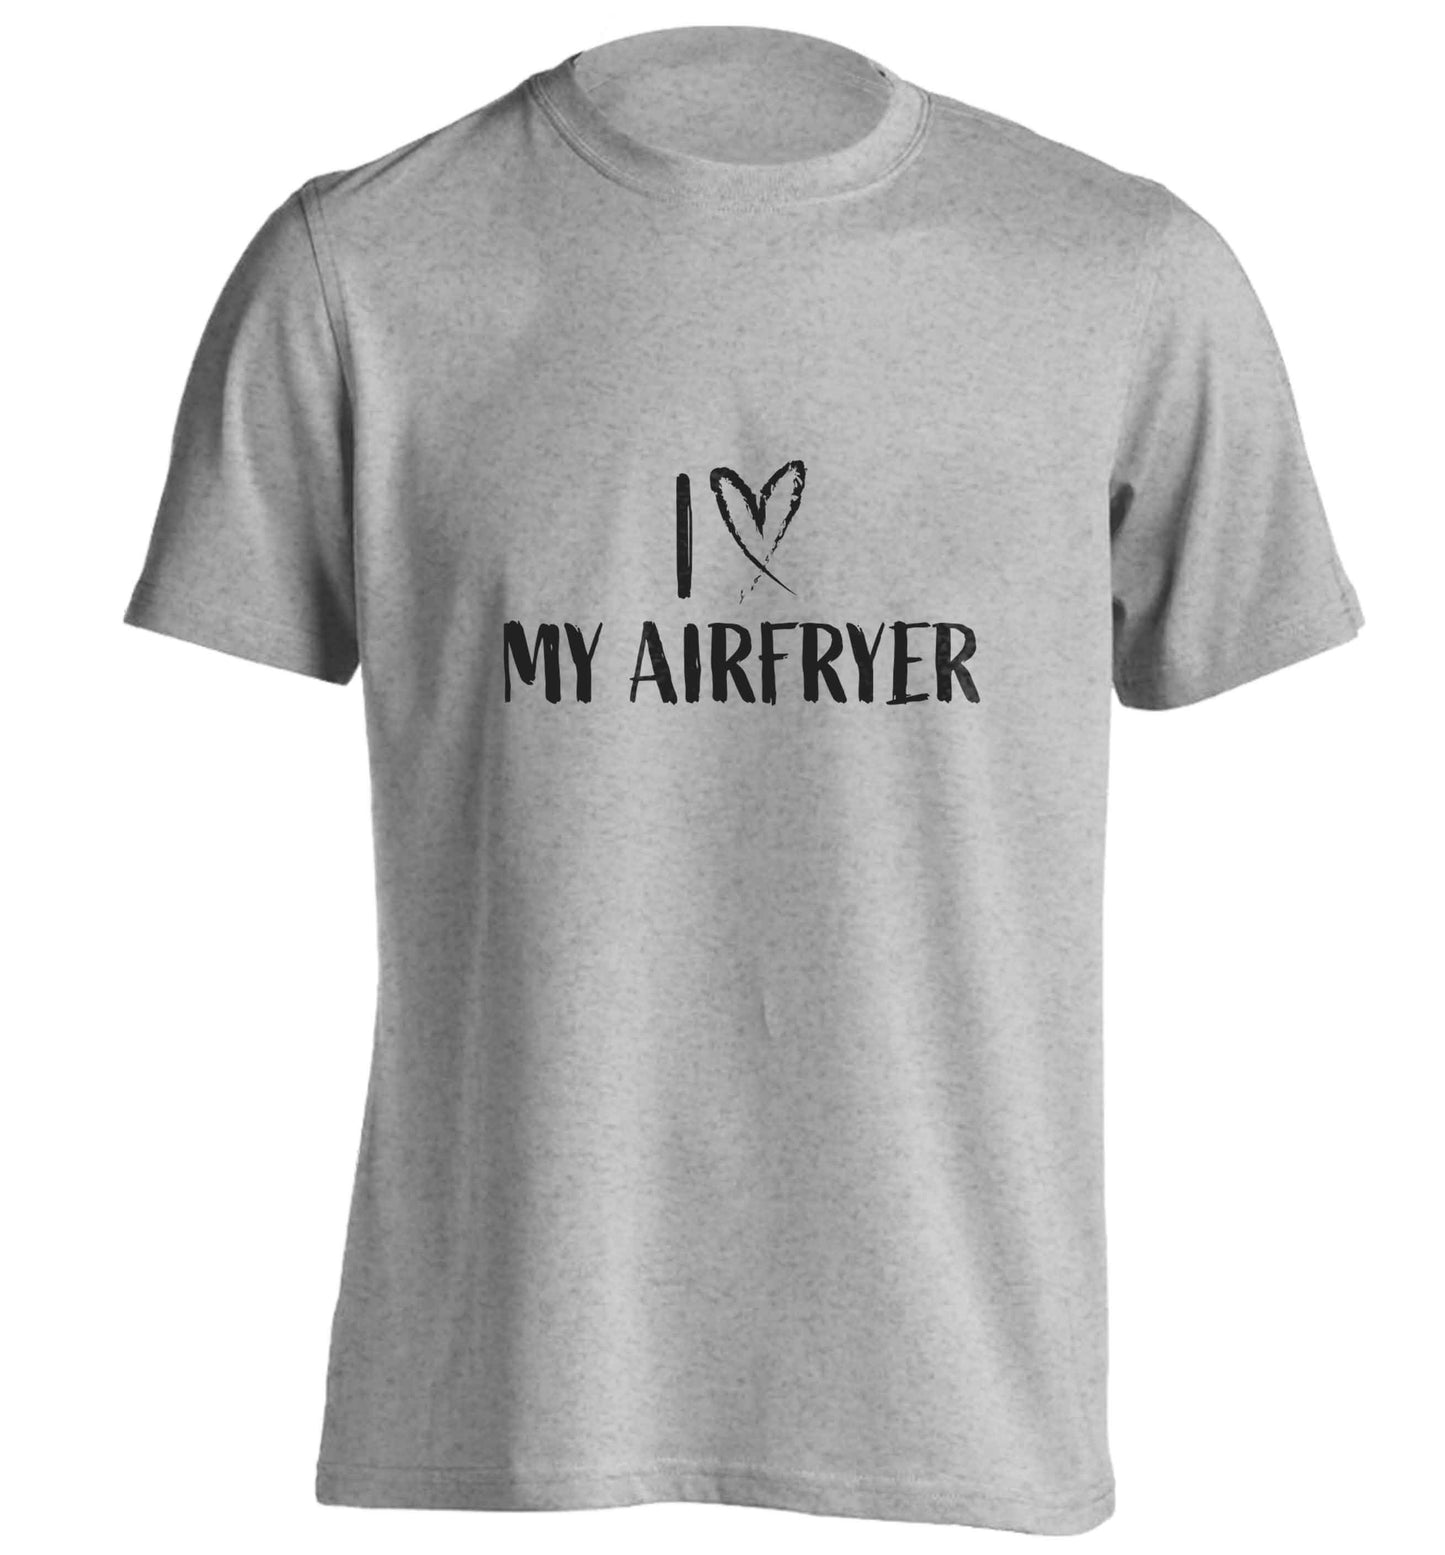 I love my airfryeradults unisex grey Tshirt 2XL